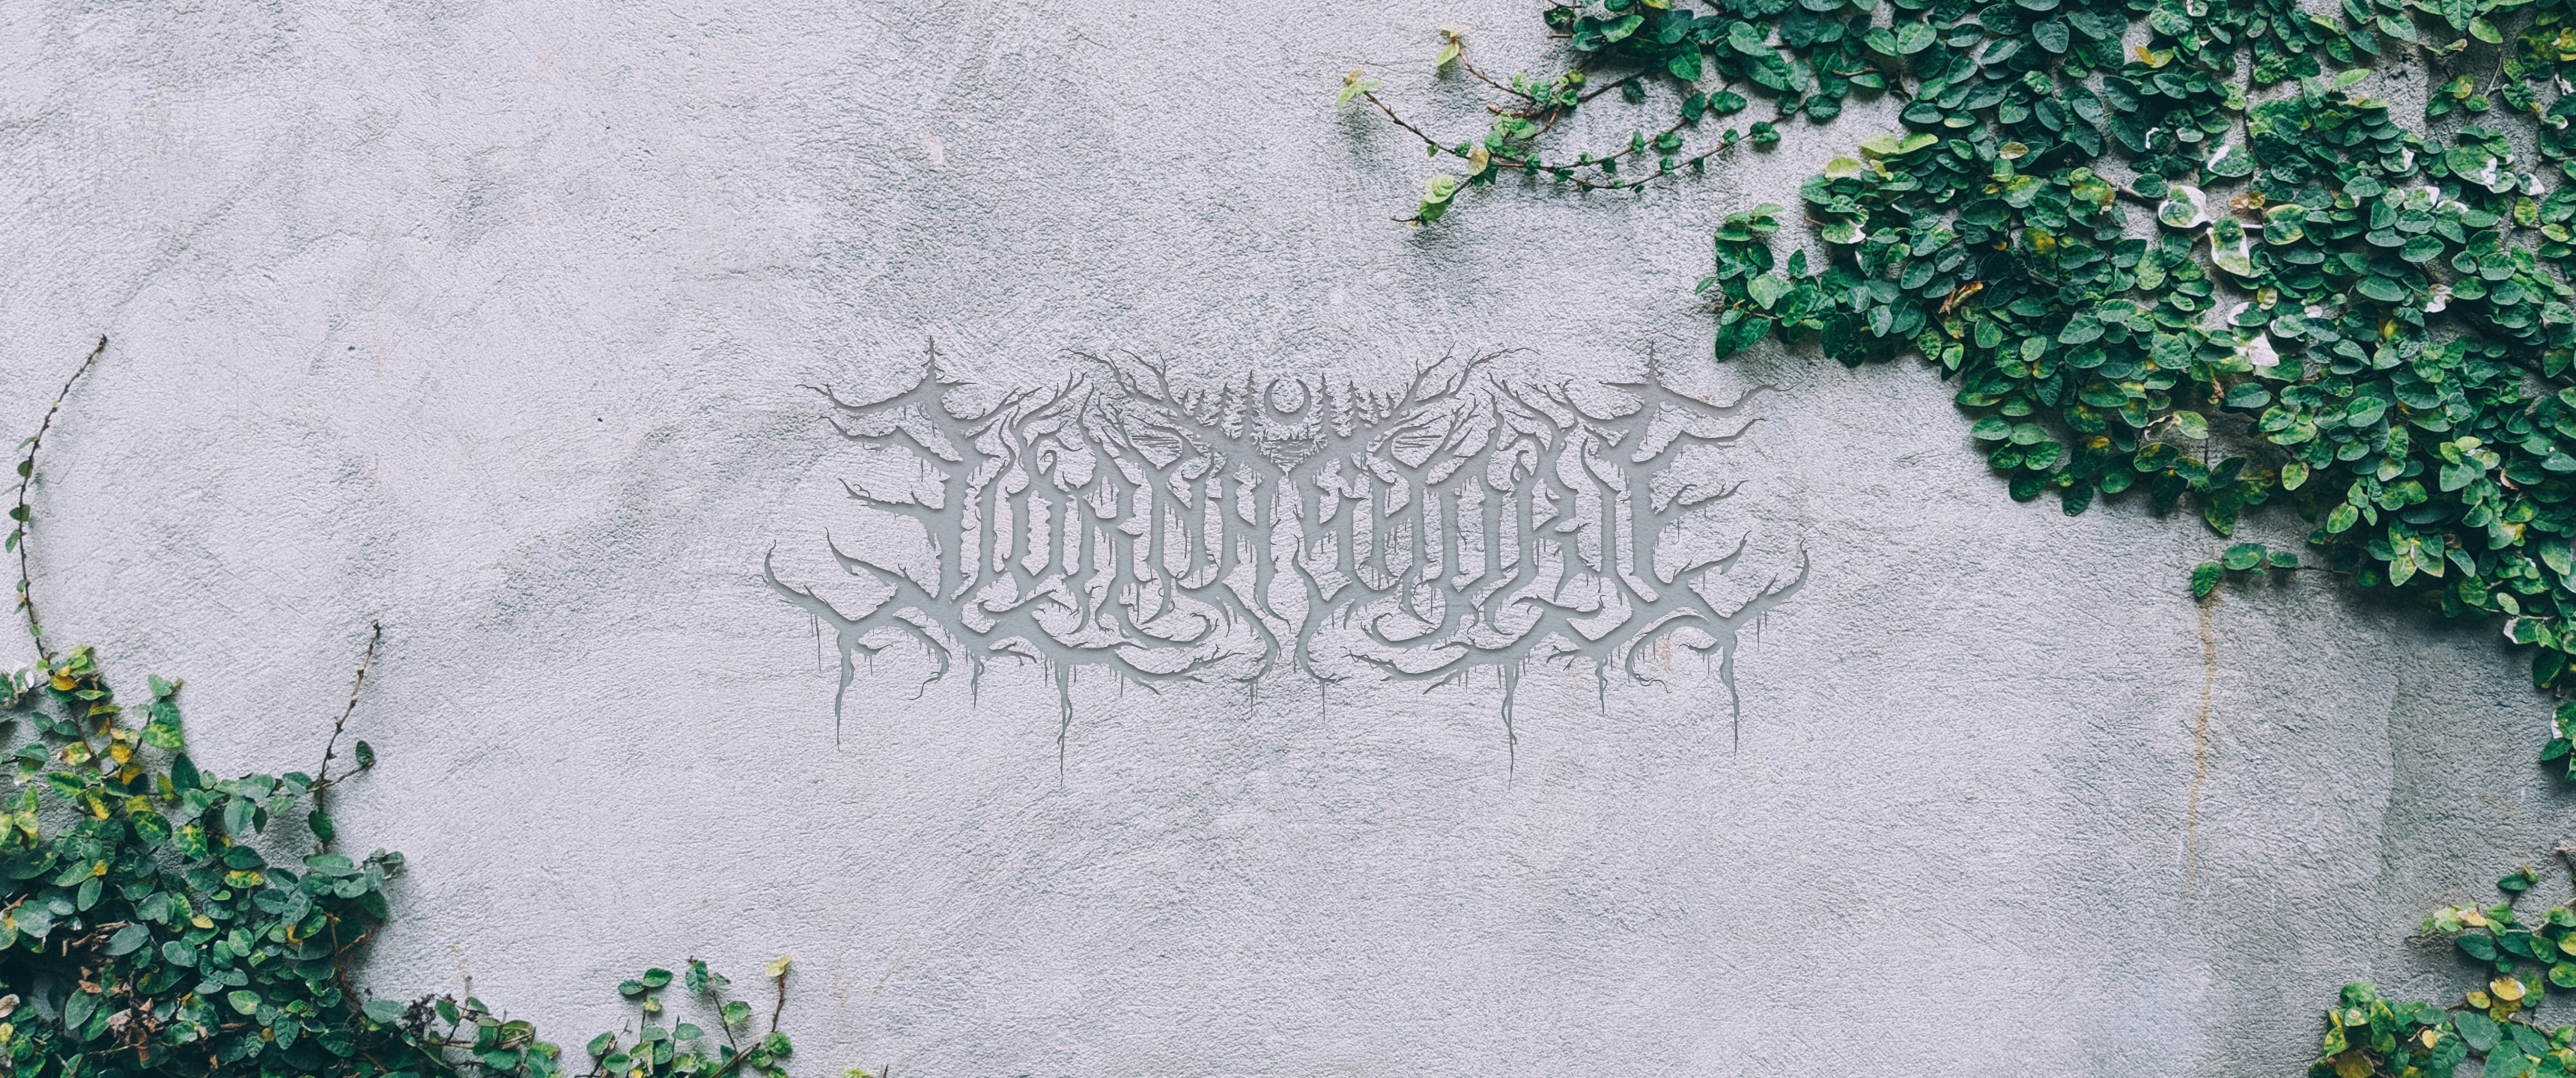 Lorna Shore Ivy Wall Deathcore Band Band Logo Logo 3440x1440